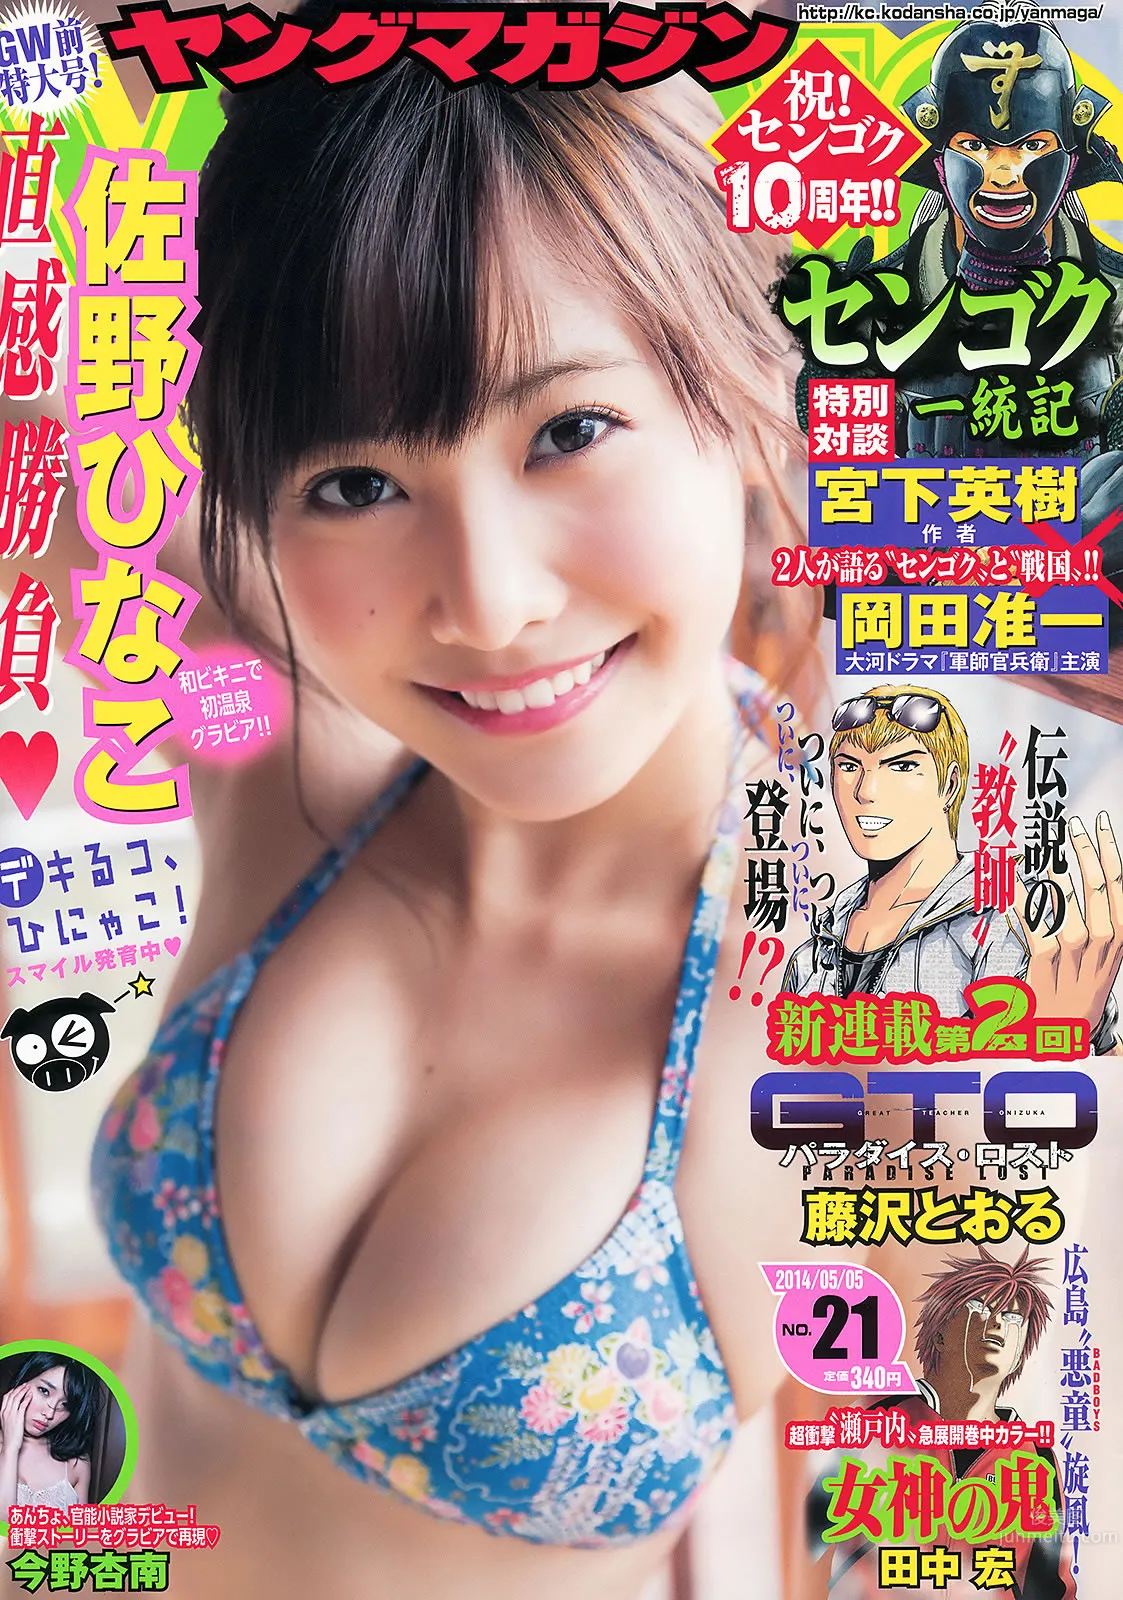 [Young Magazine] 2014 No.20 21 桥本环奈 佐野ひなこ 今野杏南_0